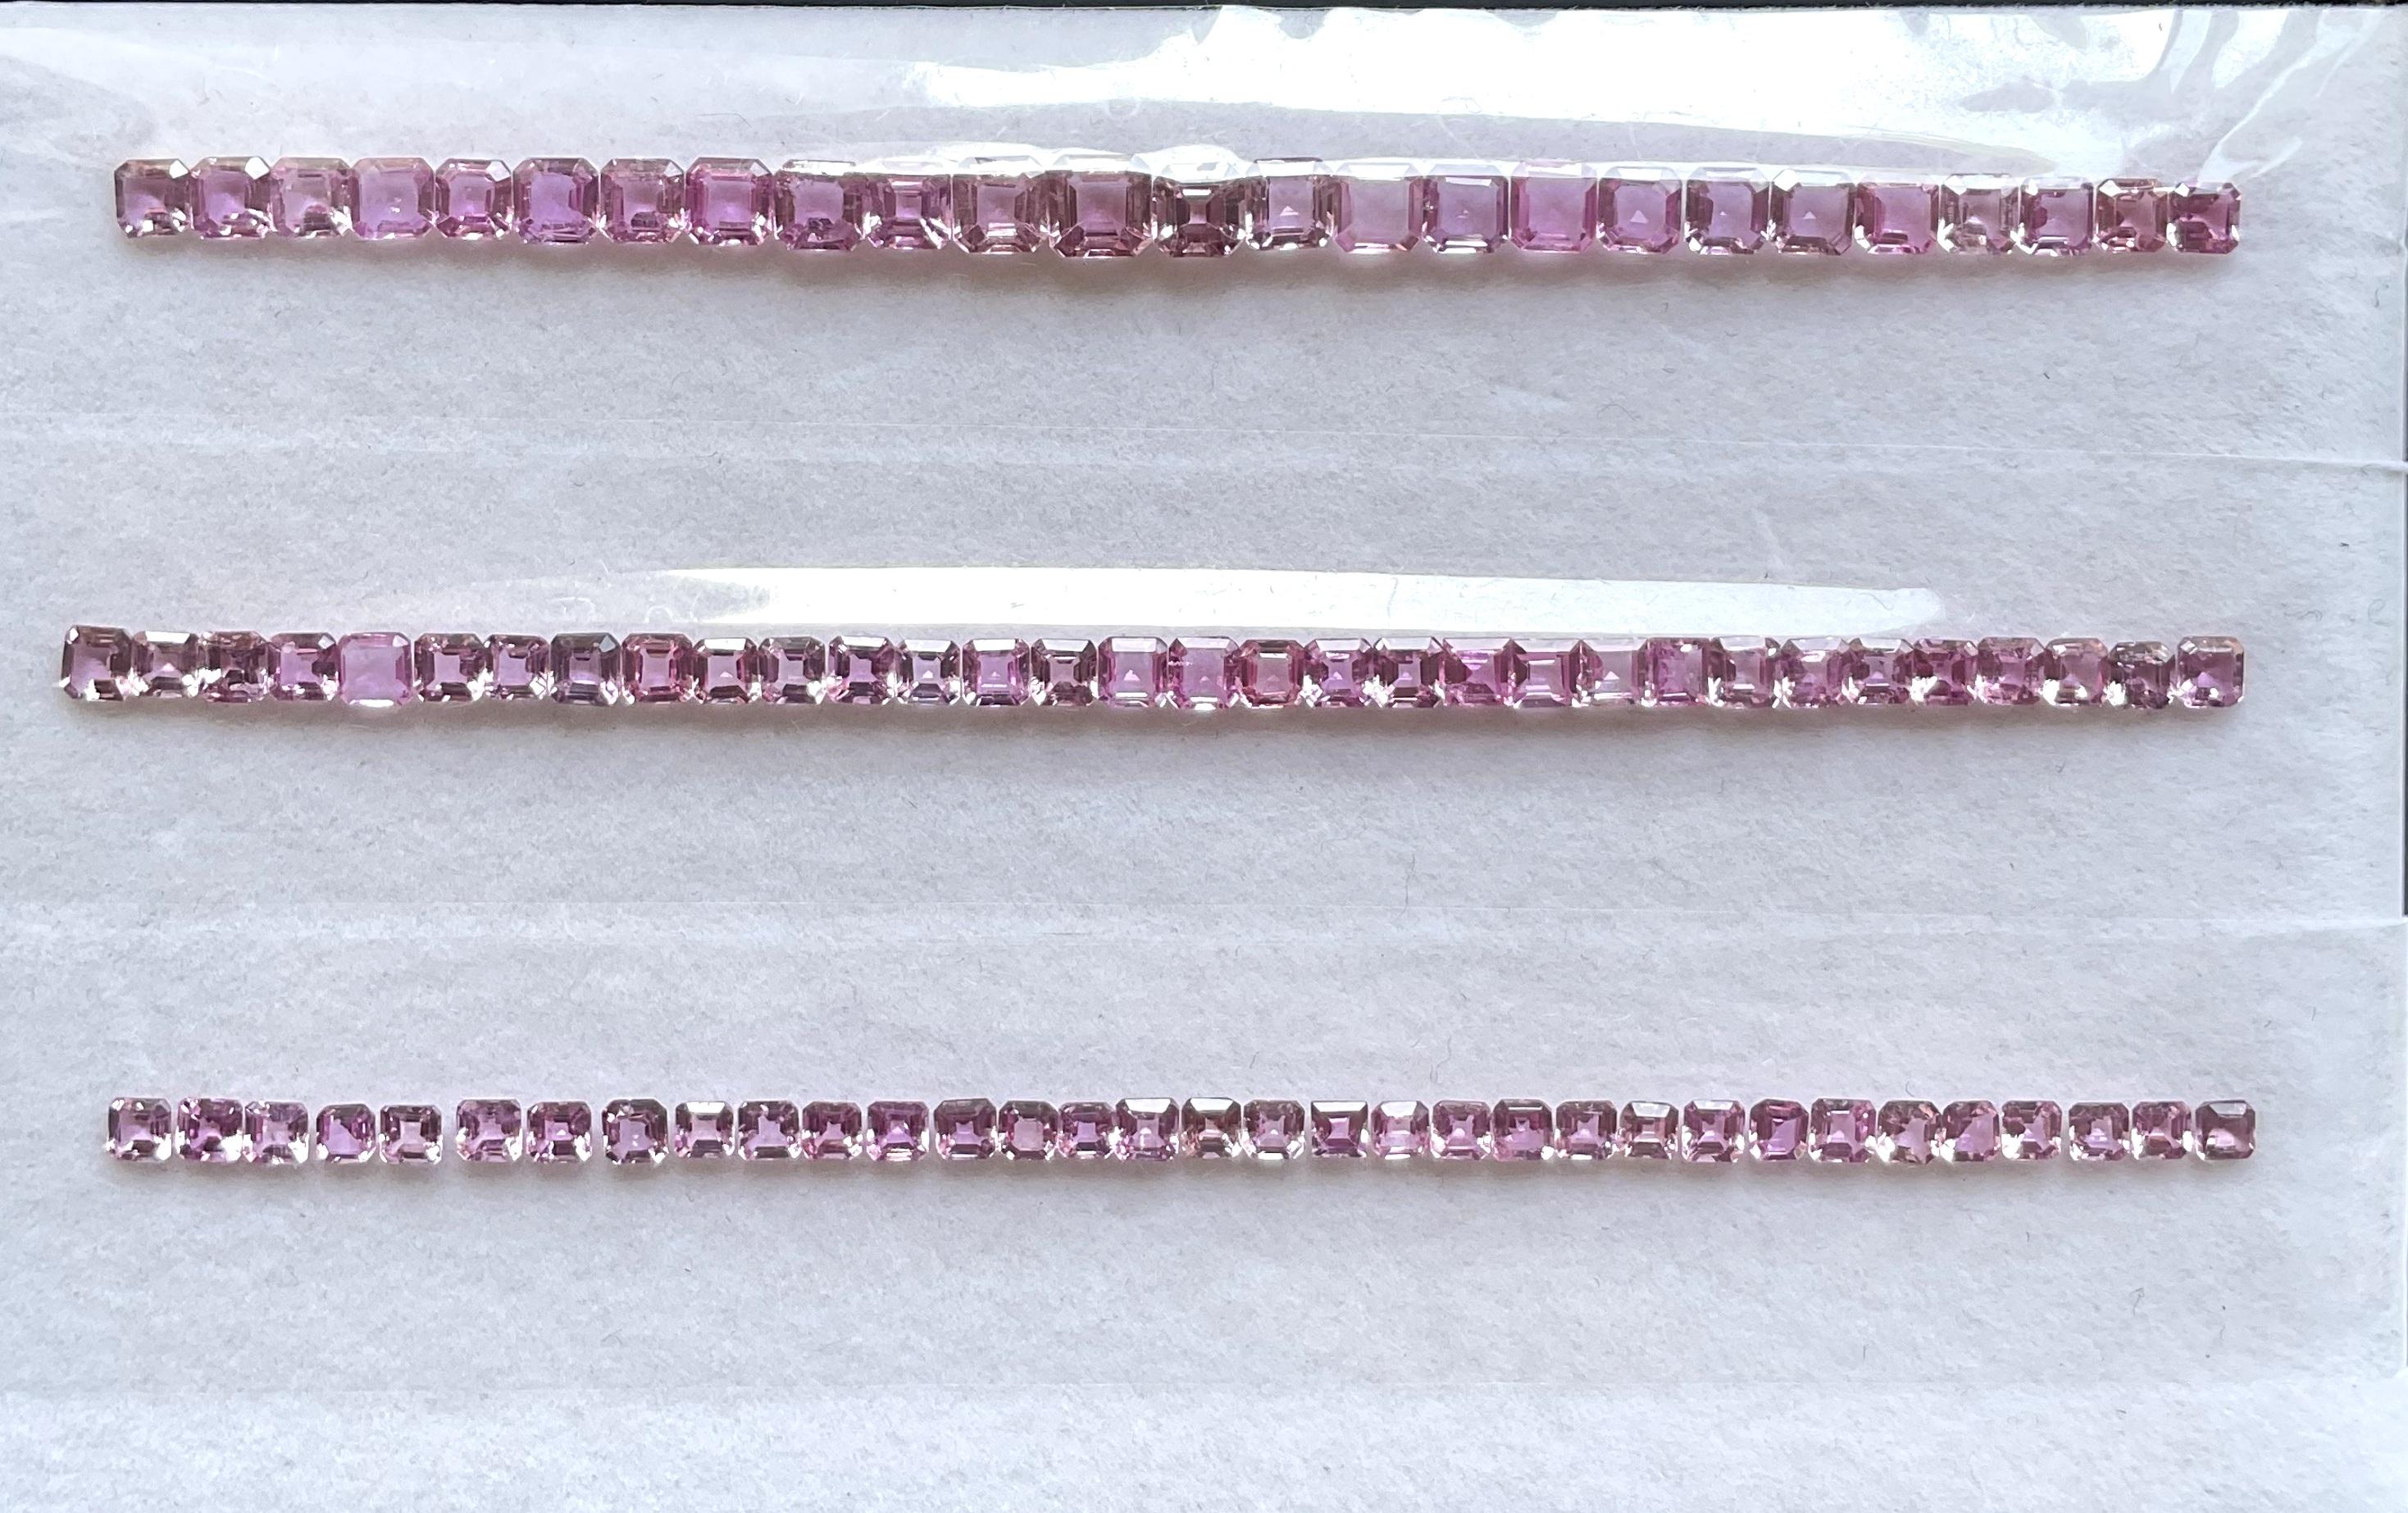 Saphir rose 3 set pour bracelets asscher cutstone pour la bijouterie fine gemme
Taille et poids :
3.00 MM - 7.64 carats
3.50 MM - 9.36 carats
4.50 MM - 11.05 carats
Traitement - Chaleur SEULEMENT
Pièces : 90 
Forme : coupe à l'emporte-pièce 